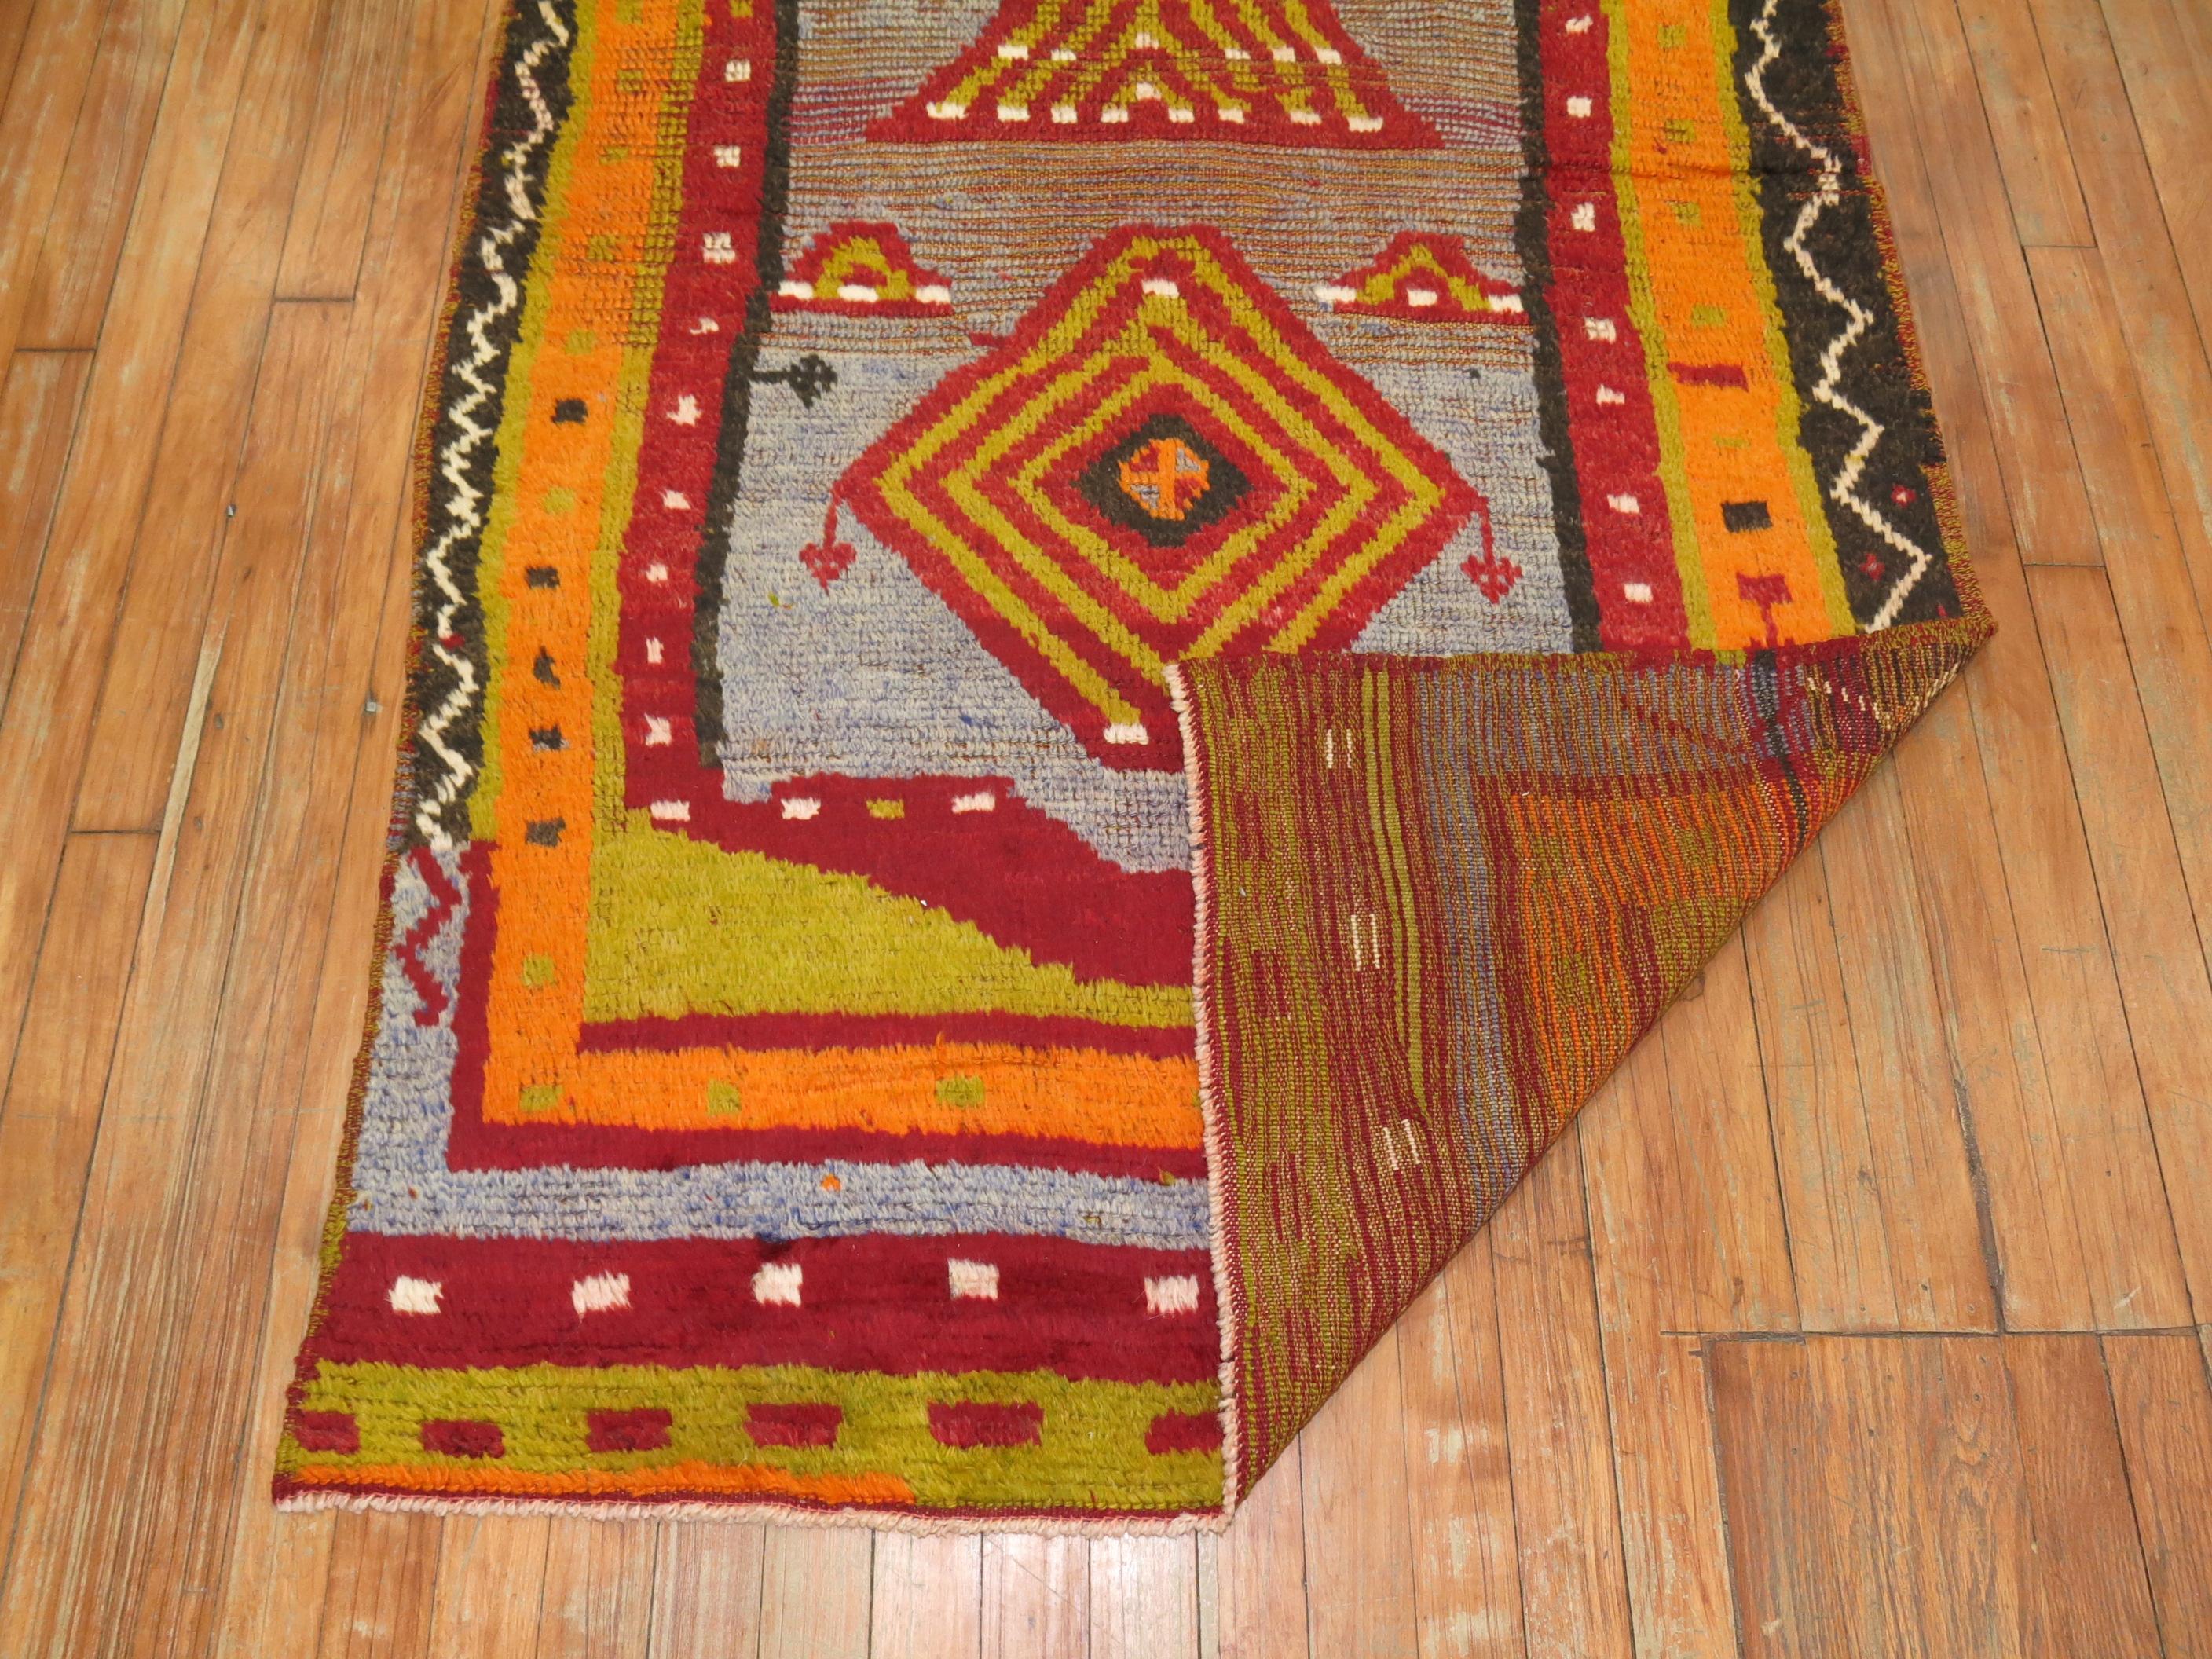 Schillernd und verheißungsvoll - so lässt sich dieser türkische Teppich aus flauschiger Angorawolle am besten beschreiben.